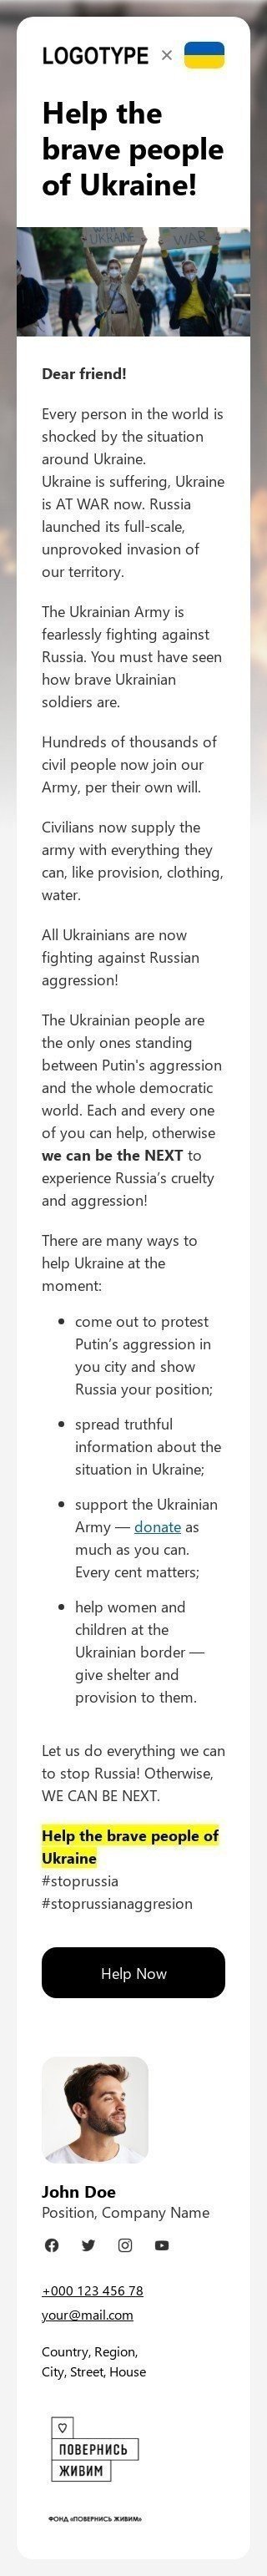 The "Spread the word to help Ukraine" email template Visualização de dispositivo móvel